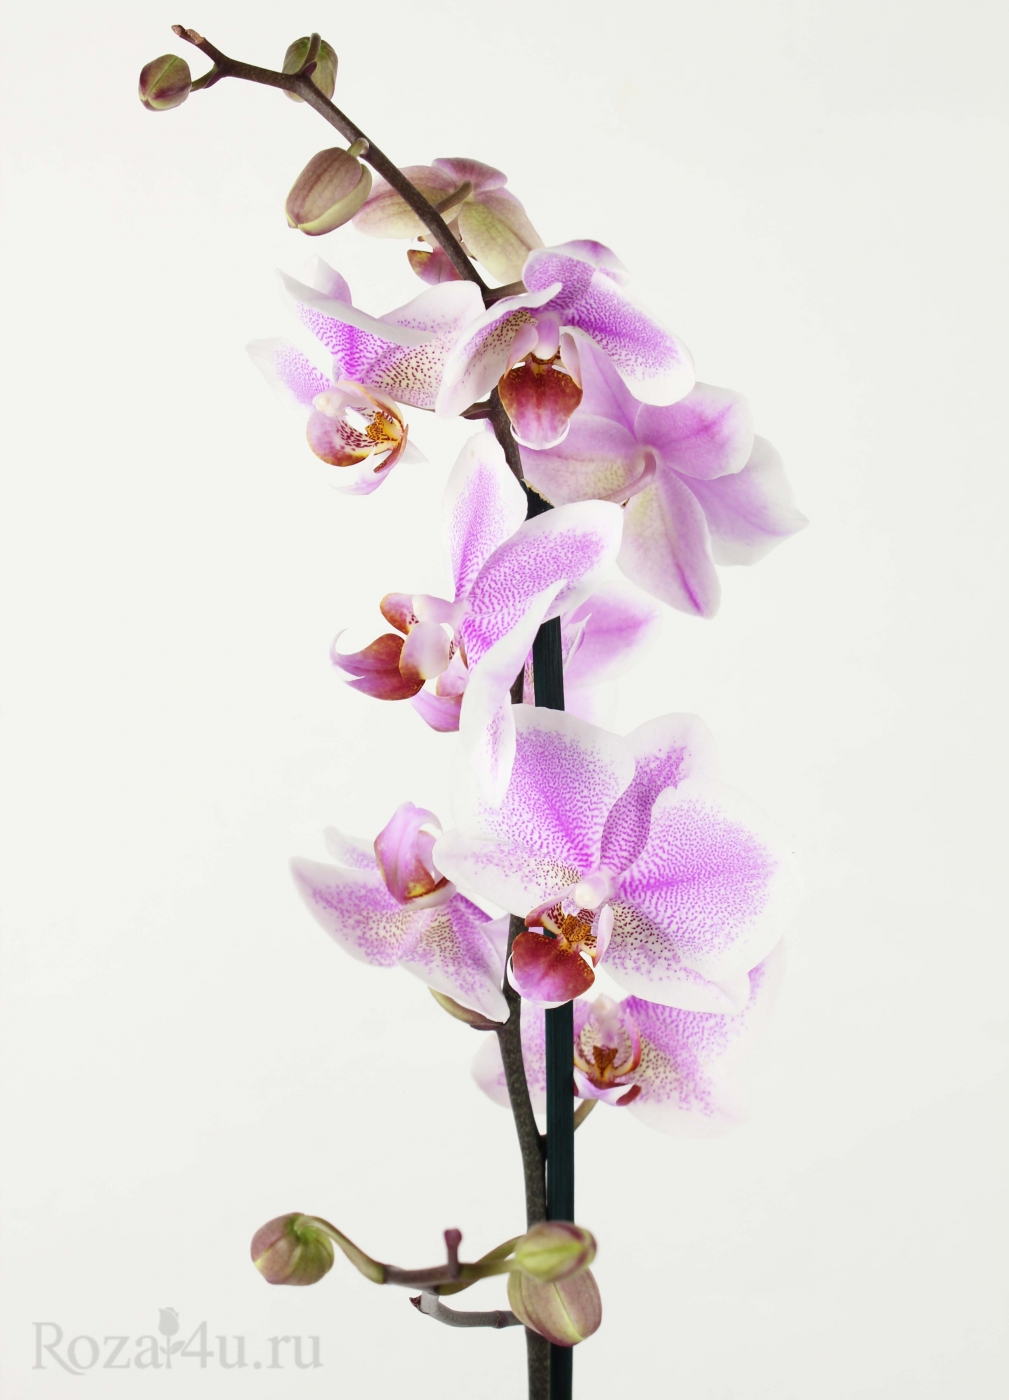 Орхидея Фаленопсис одноствольная белая с сиреневым